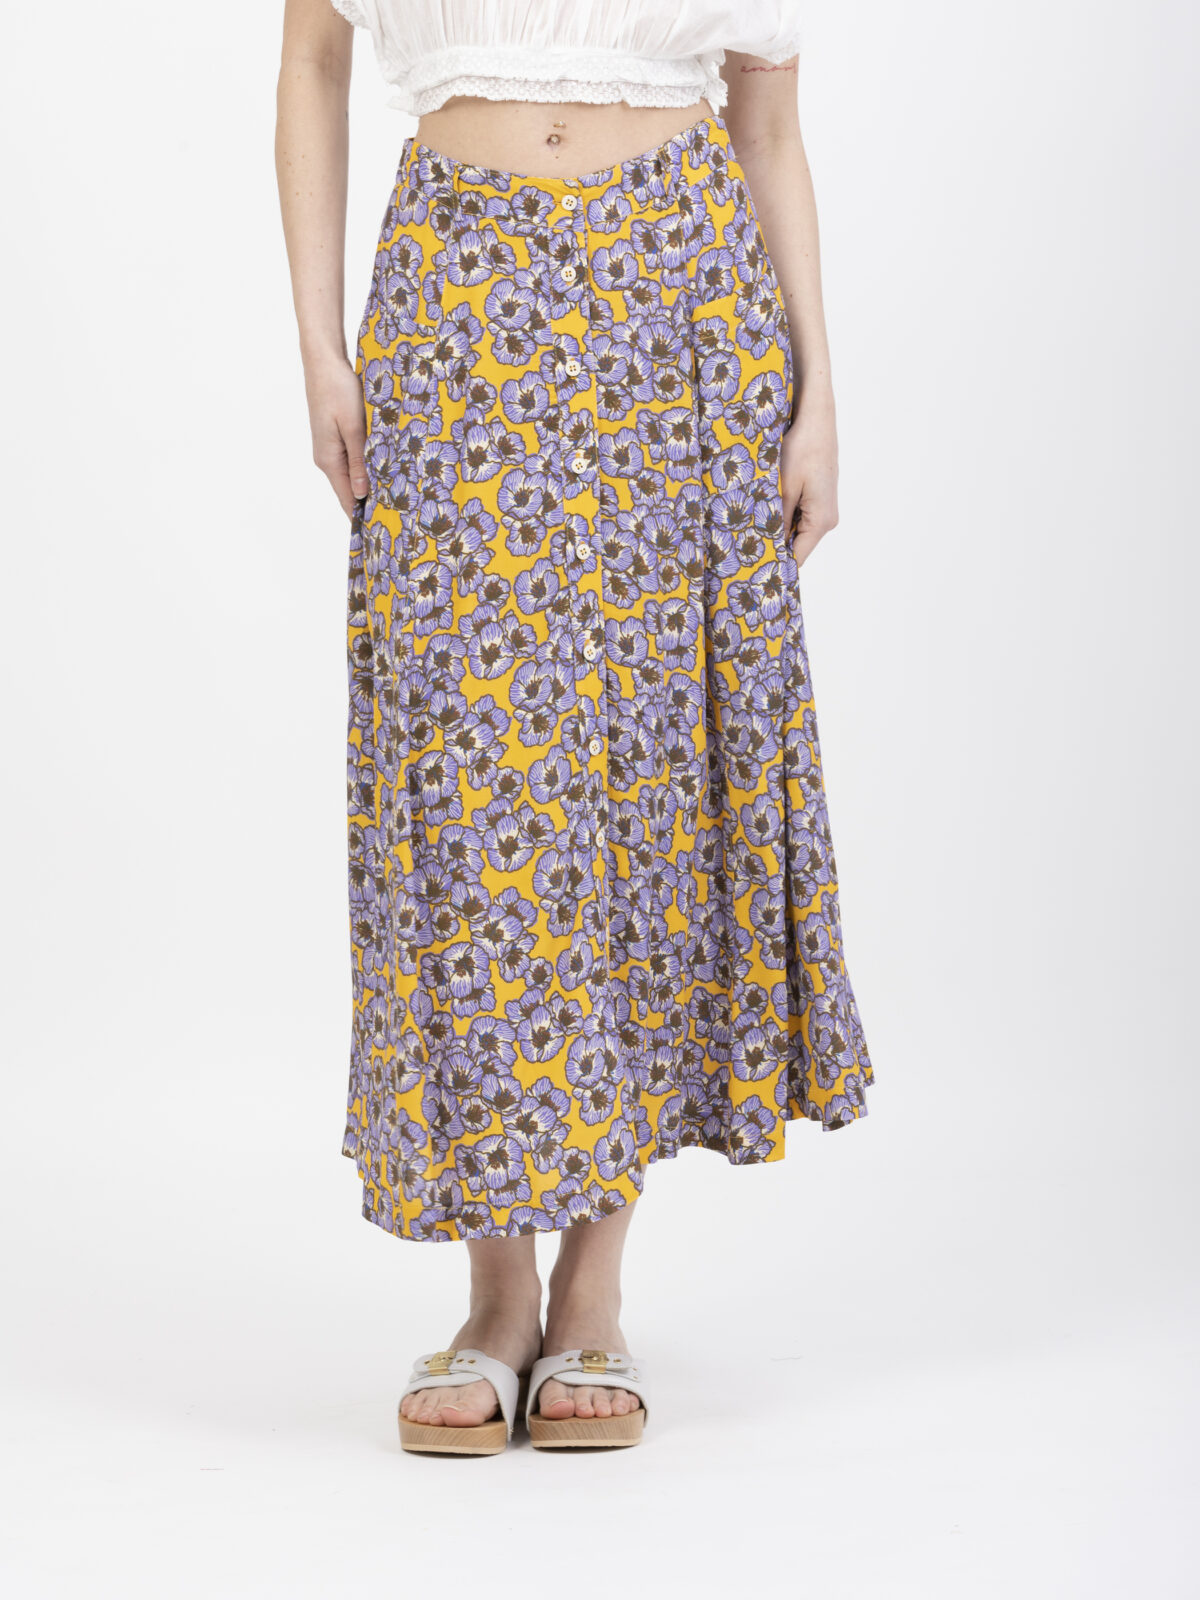 juvenille-floral-skirt-petite-francaise-matchboxathens-shop-online-athens-boutique